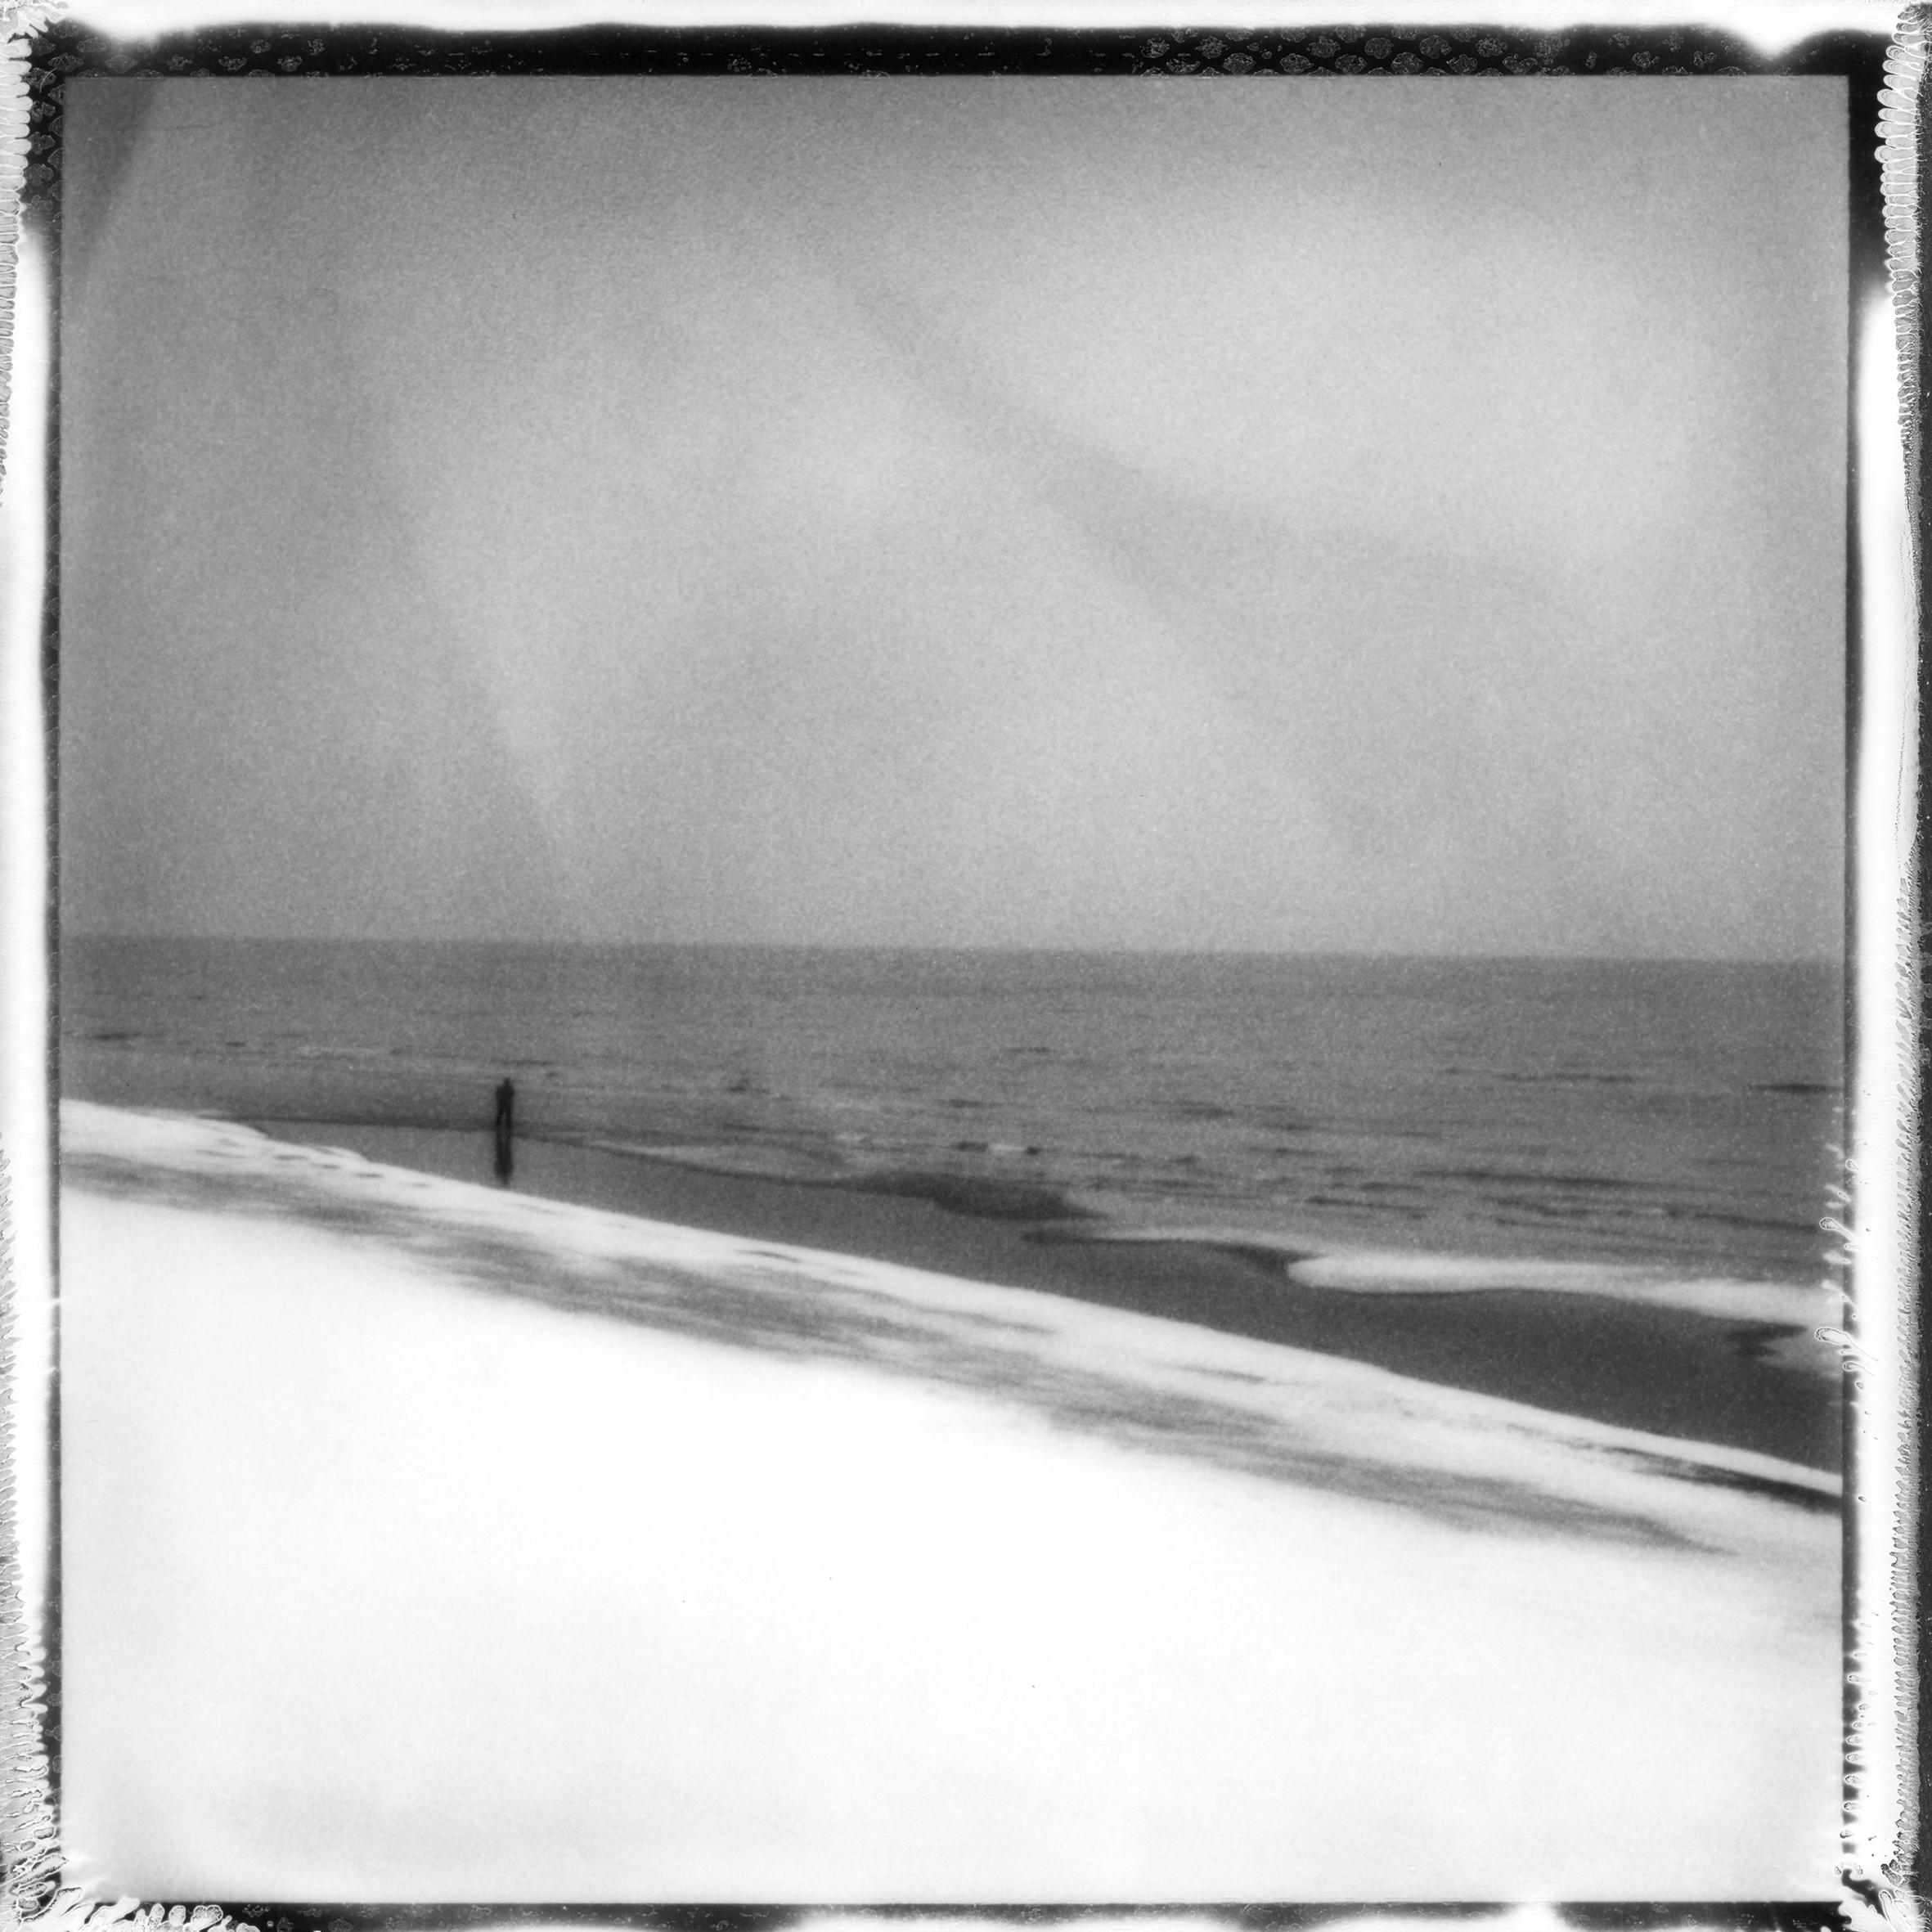 Landscape Photograph Ugne Pouwell - 'Frozen beach #6' - photographie de paysage analogique en noir et blanc